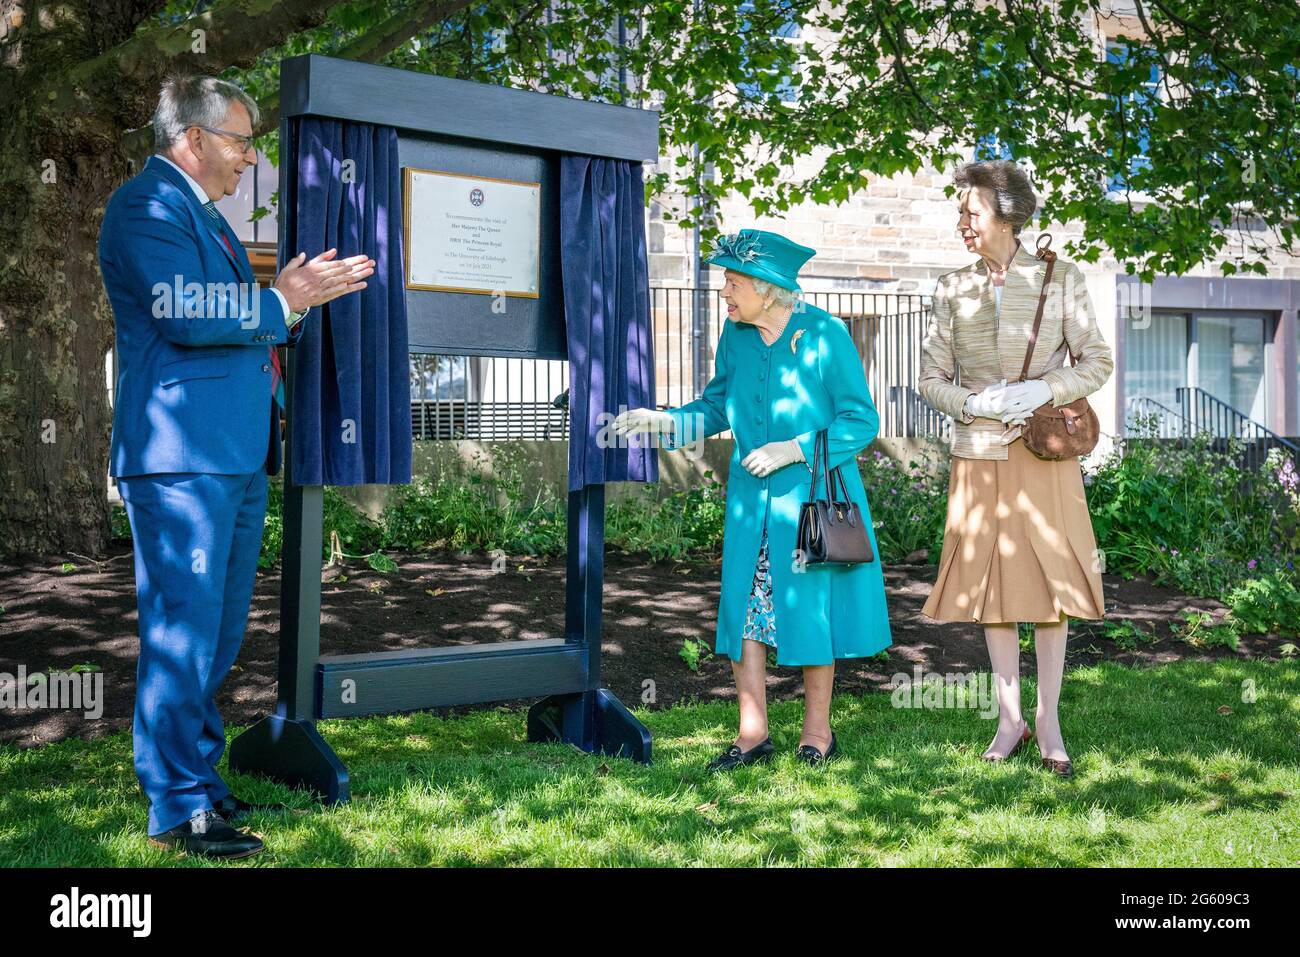 La reine Elizabeth II et la princesse royale, avec le principal et vice-chancelier Peter Mathieson (à gauche), dévoilent une plaque commémorative lors d'une visite à l'Edinburgh Climate change Institute, dans le cadre de son voyage traditionnel en Écosse pour la semaine de Holyrood. Date de la photo : jeudi 1er juillet 2021. Banque D'Images